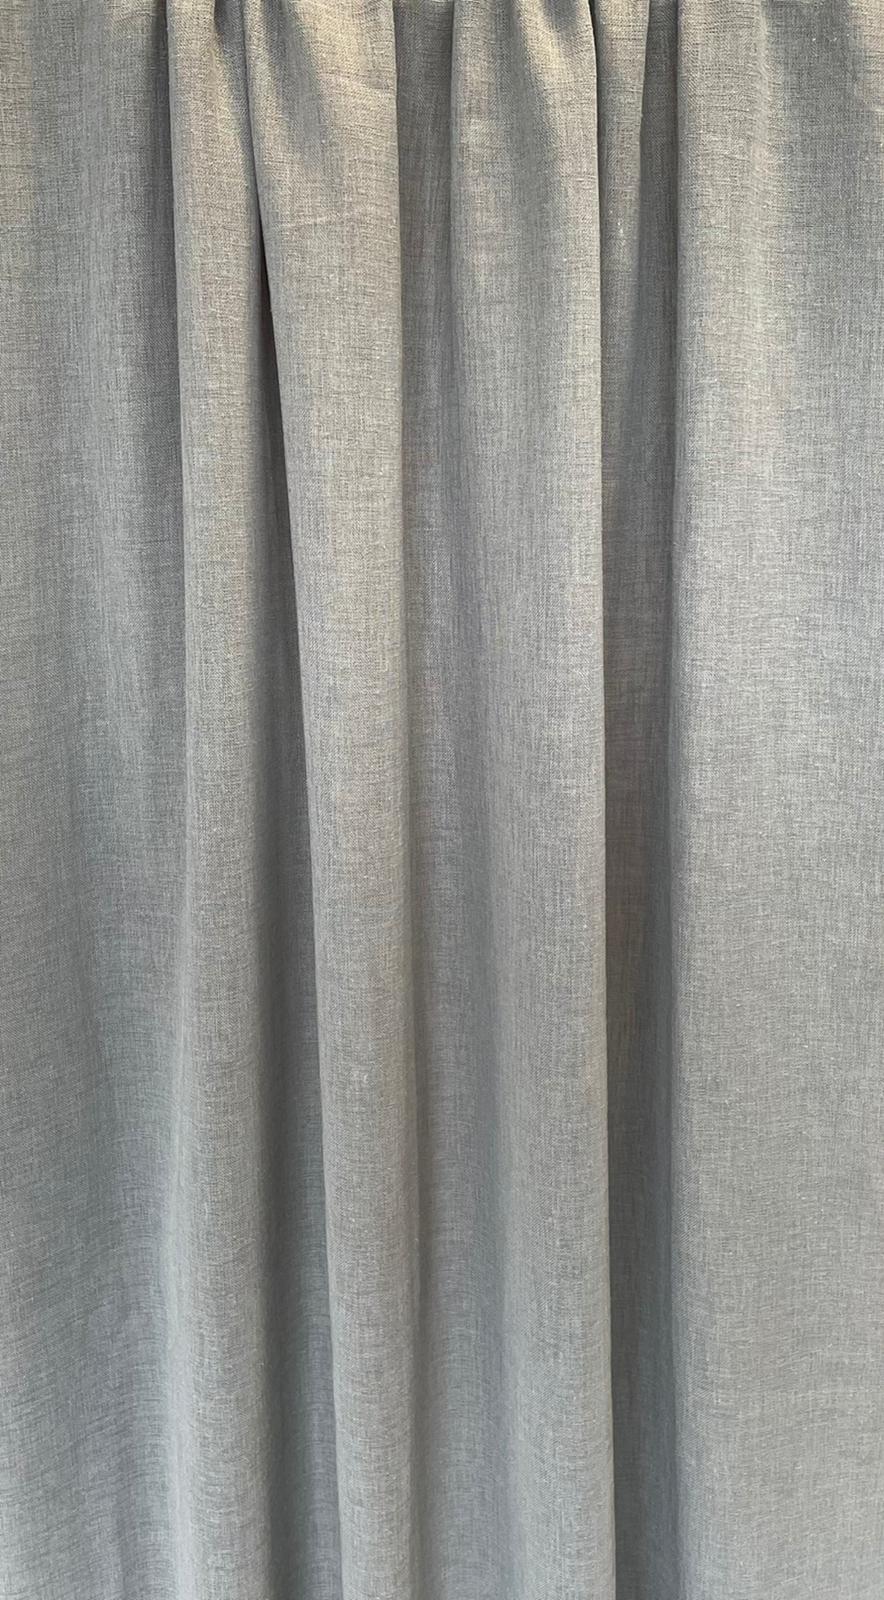 Stroomopwaarts kortademigheid serveerster Inbetween Denver V25 grijs | 325 cm hoog | Claassen Stoffen